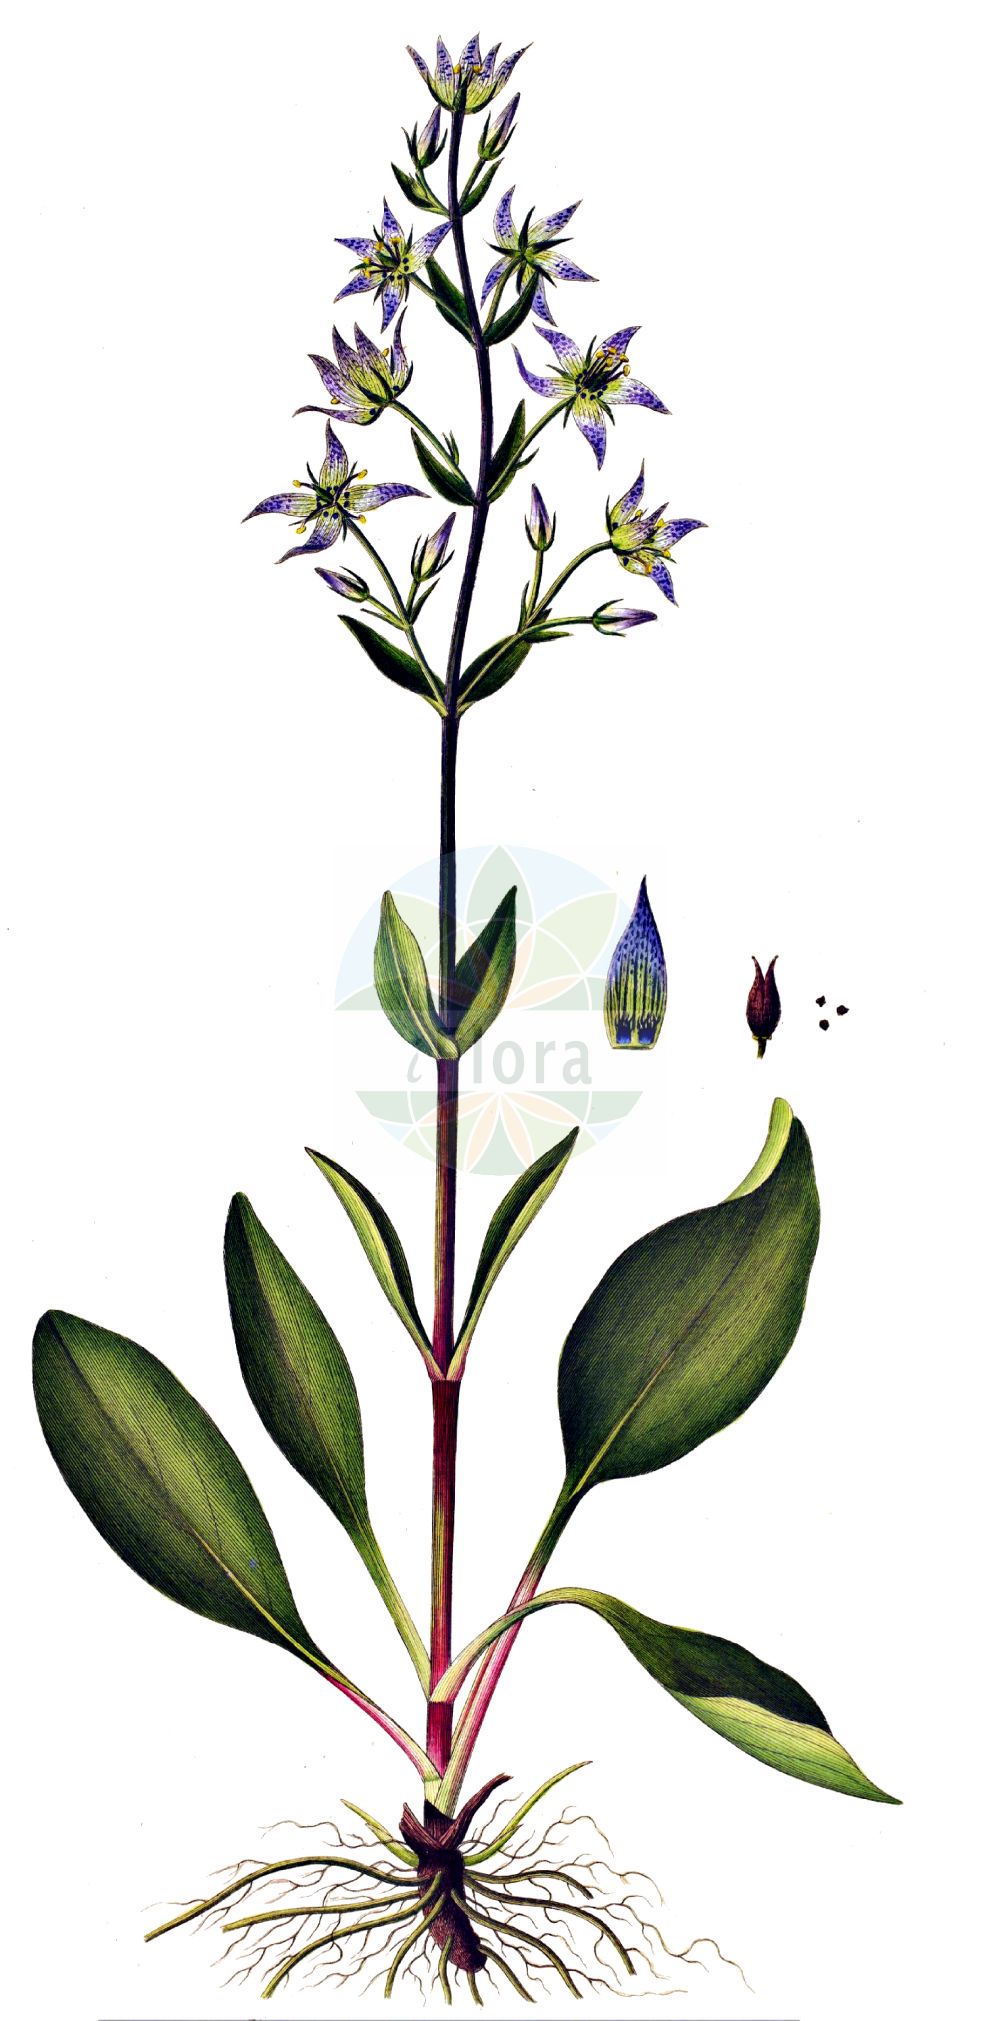 Historische Abbildung von Swertia perennis (Blauer Sumpfstern - Felwort). Das Bild zeigt Blatt, Bluete, Frucht und Same. ---- Historical Drawing of Swertia perennis (Blauer Sumpfstern - Felwort). The image is showing leaf, flower, fruit and seed.(Swertia perennis,Blauer Sumpfstern,Felwort,Swertia obtusa,Swertia perennis,Swertia punctata,Blauer Sumpfstern,Gebirgs-Blauer Sumpfstern,Gewoehnlicher Blauer Sumpfstern,Moorenzian,Sumpfenzian,Tarant,Felwort,Marsh Felwort,Star Swertia,Swertia,Sumpfstern,Felwort,Gentianaceae,Enziangewächse,Gentian family,Blatt,Bluete,Frucht,Same,leaf,flower,fruit,seed,Oeder (1761-1883))